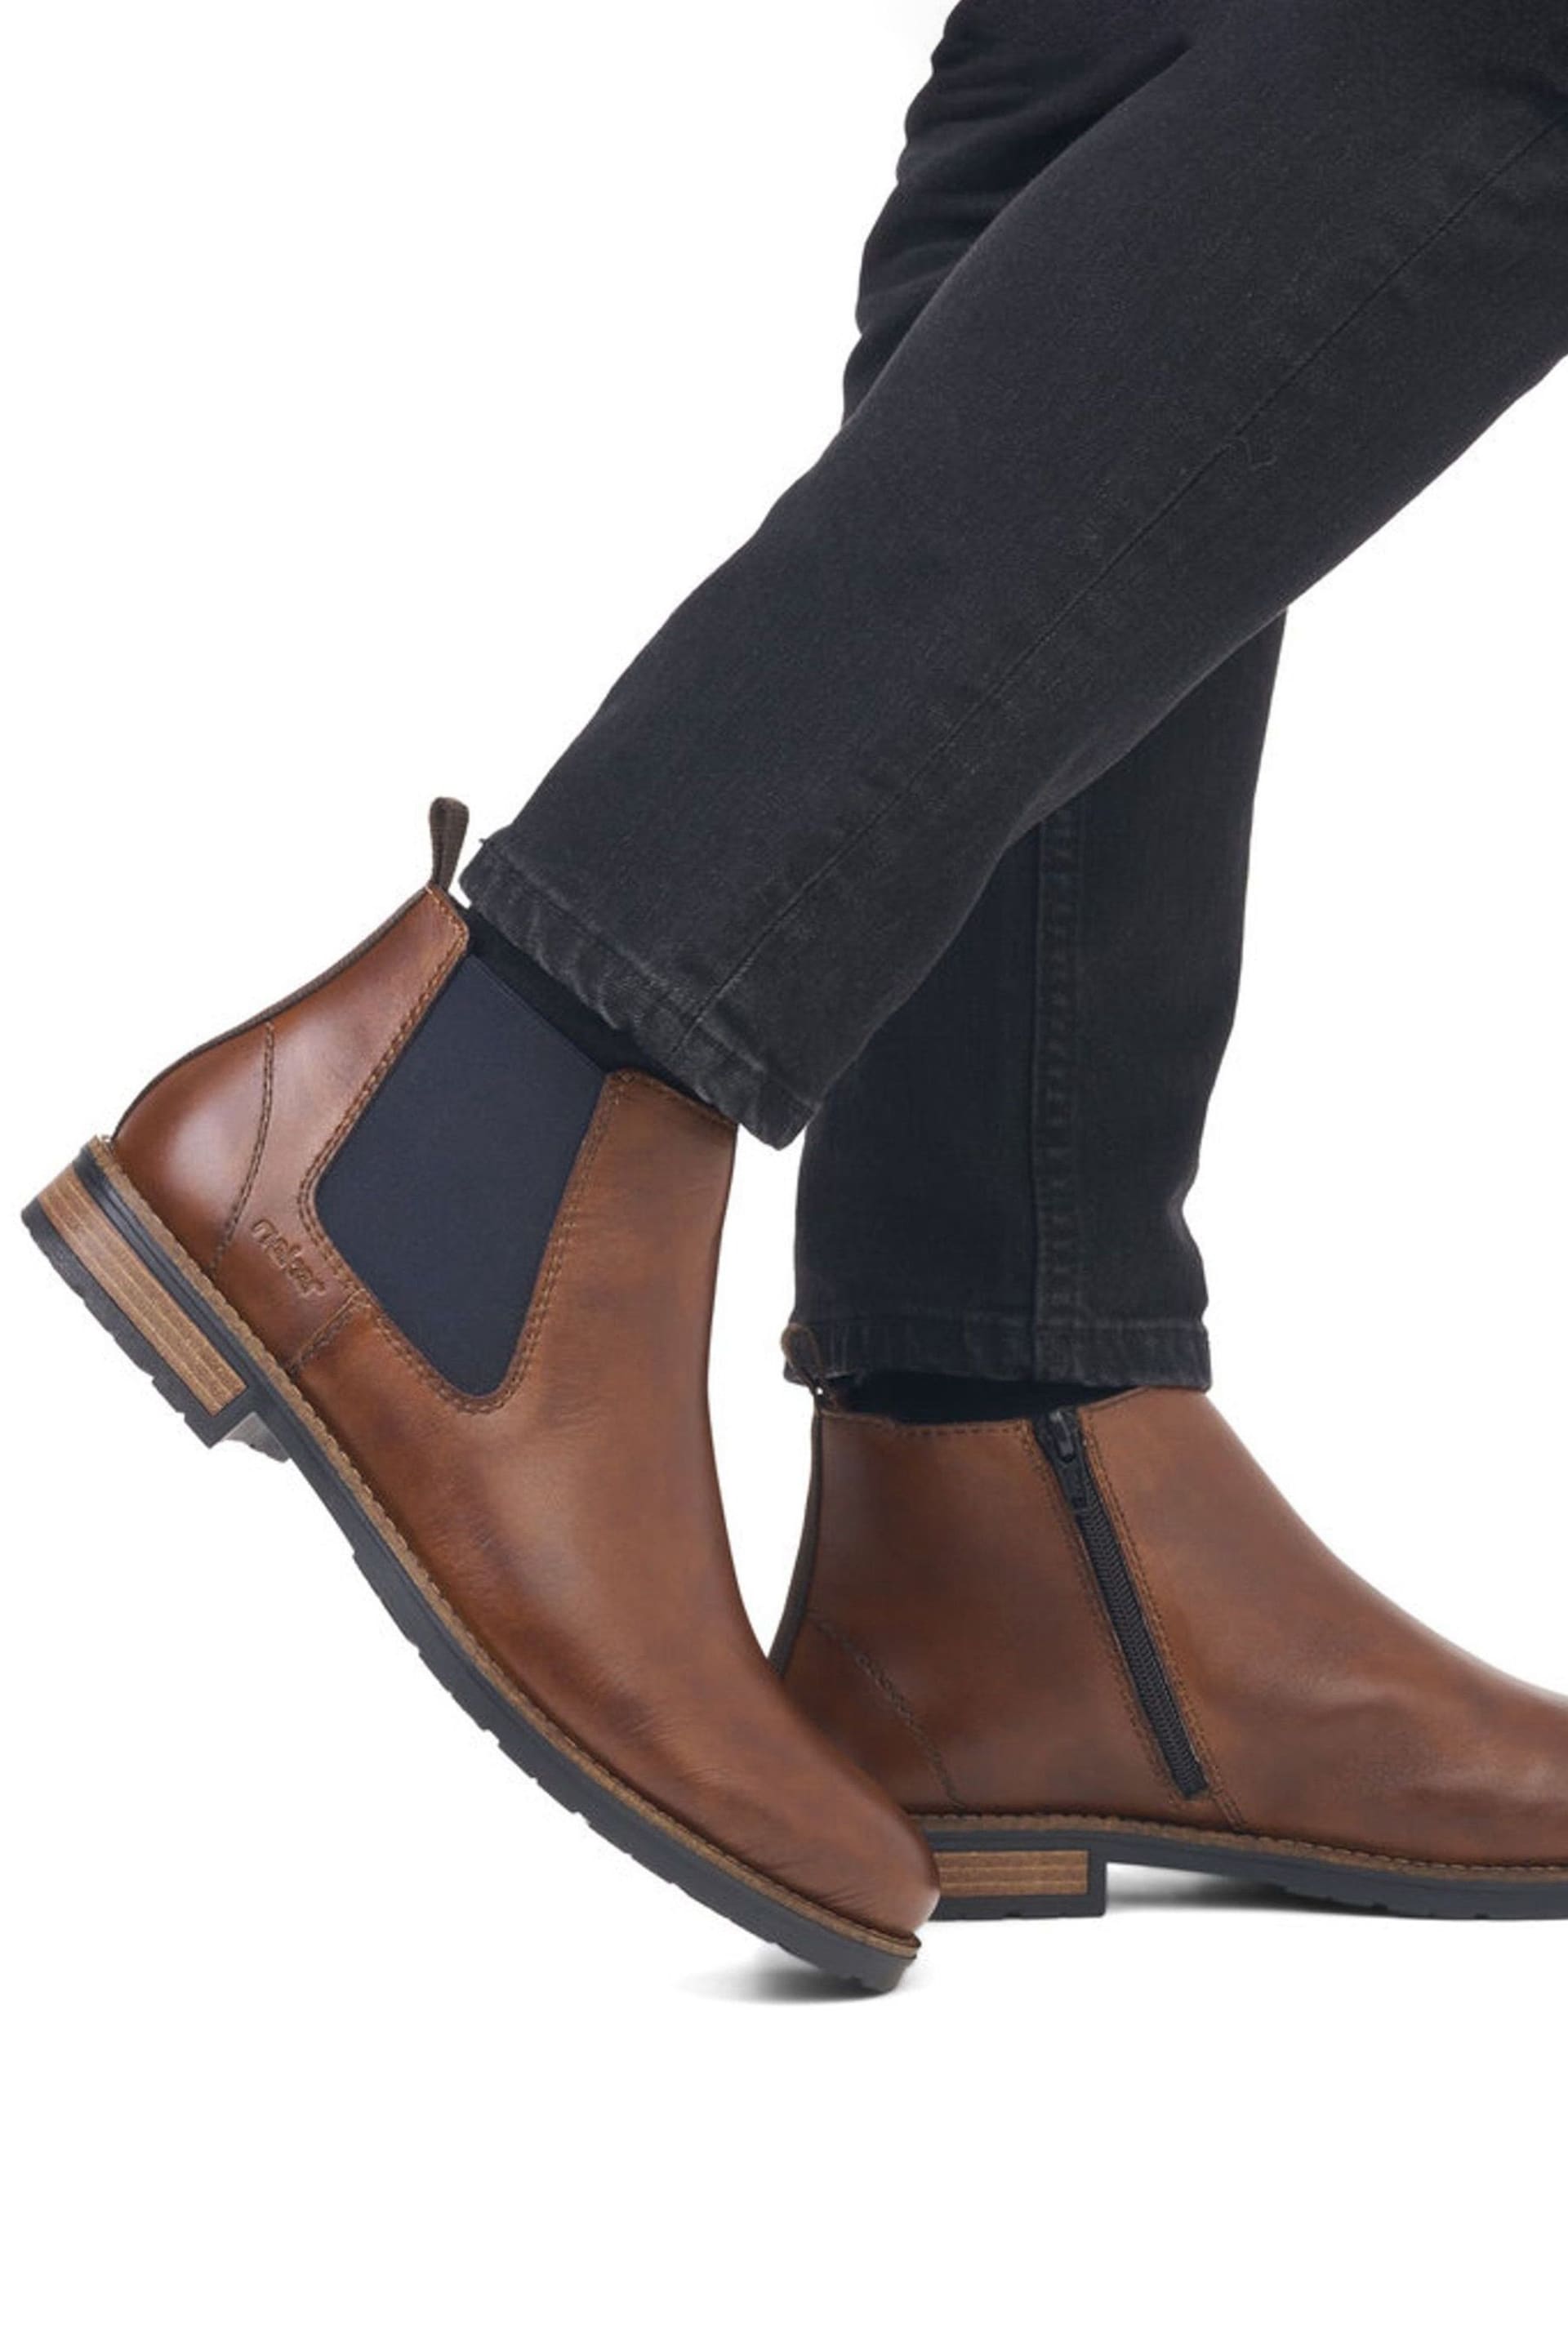 Rieker Mens Zipper Brown Boots - Image 9 of 9